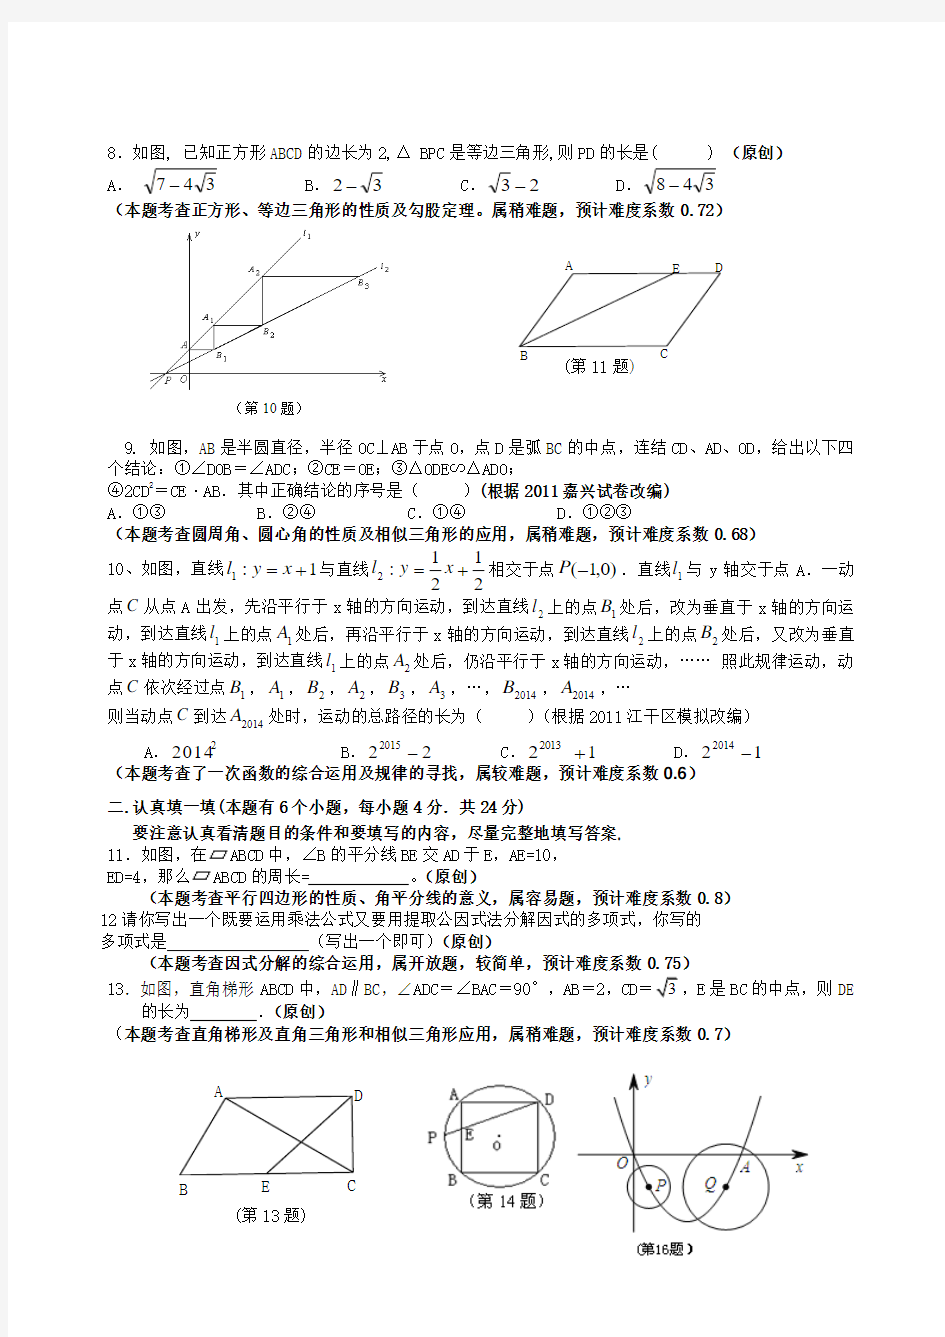 浙江省杭州市2014年中考数学模拟试卷(1)及答案